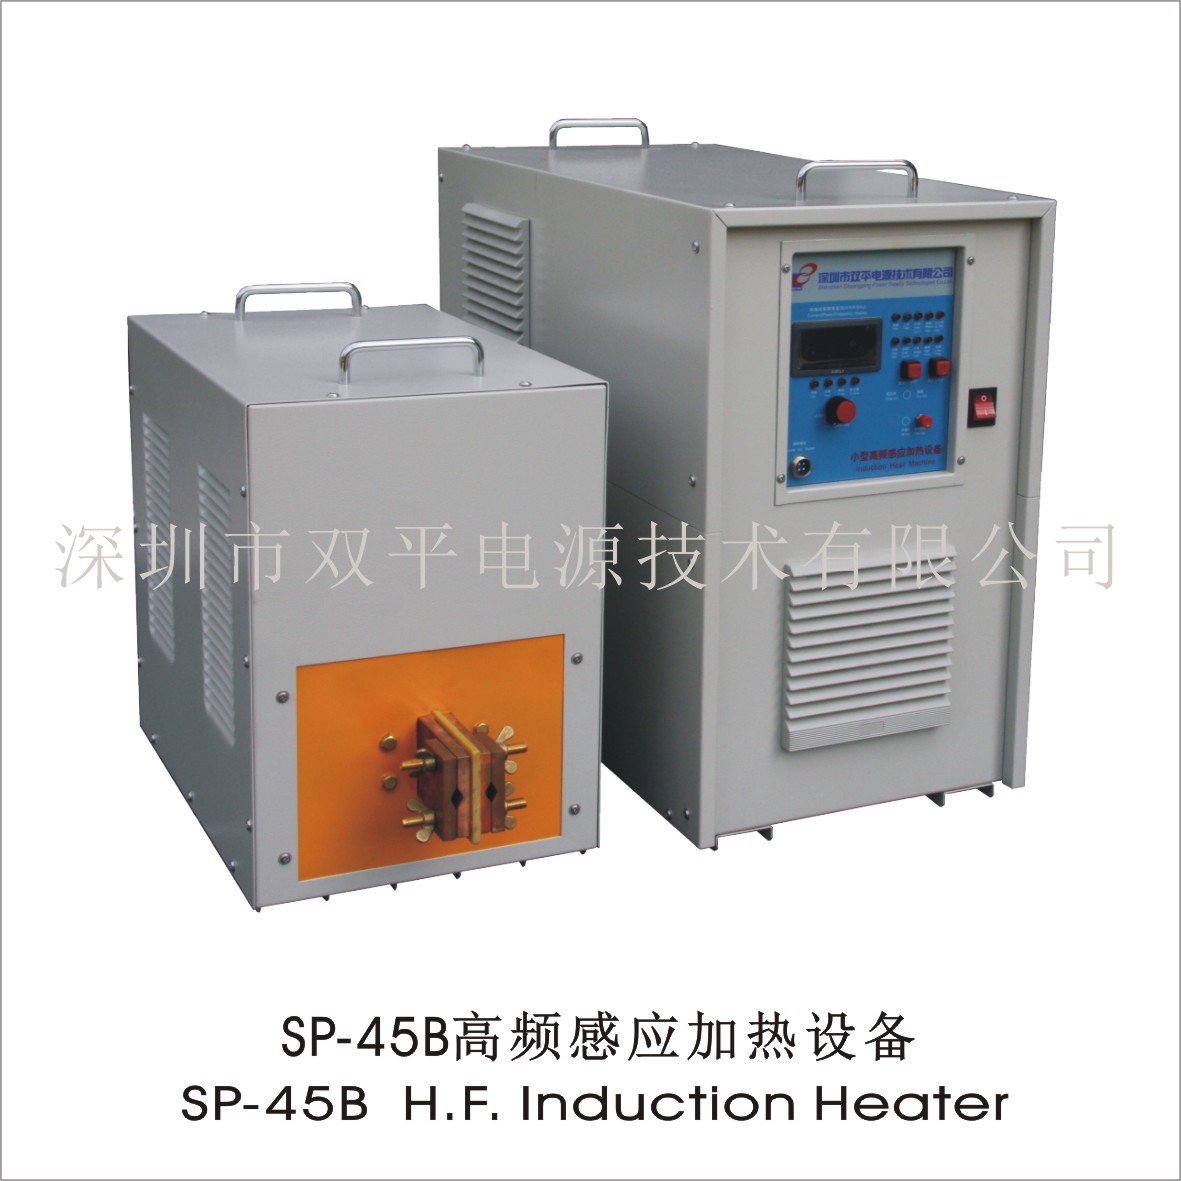 深圳双平供应SP-45B高频感应加热设备用于金刚石工具钎焊木工刀具钎焊零件热处理等